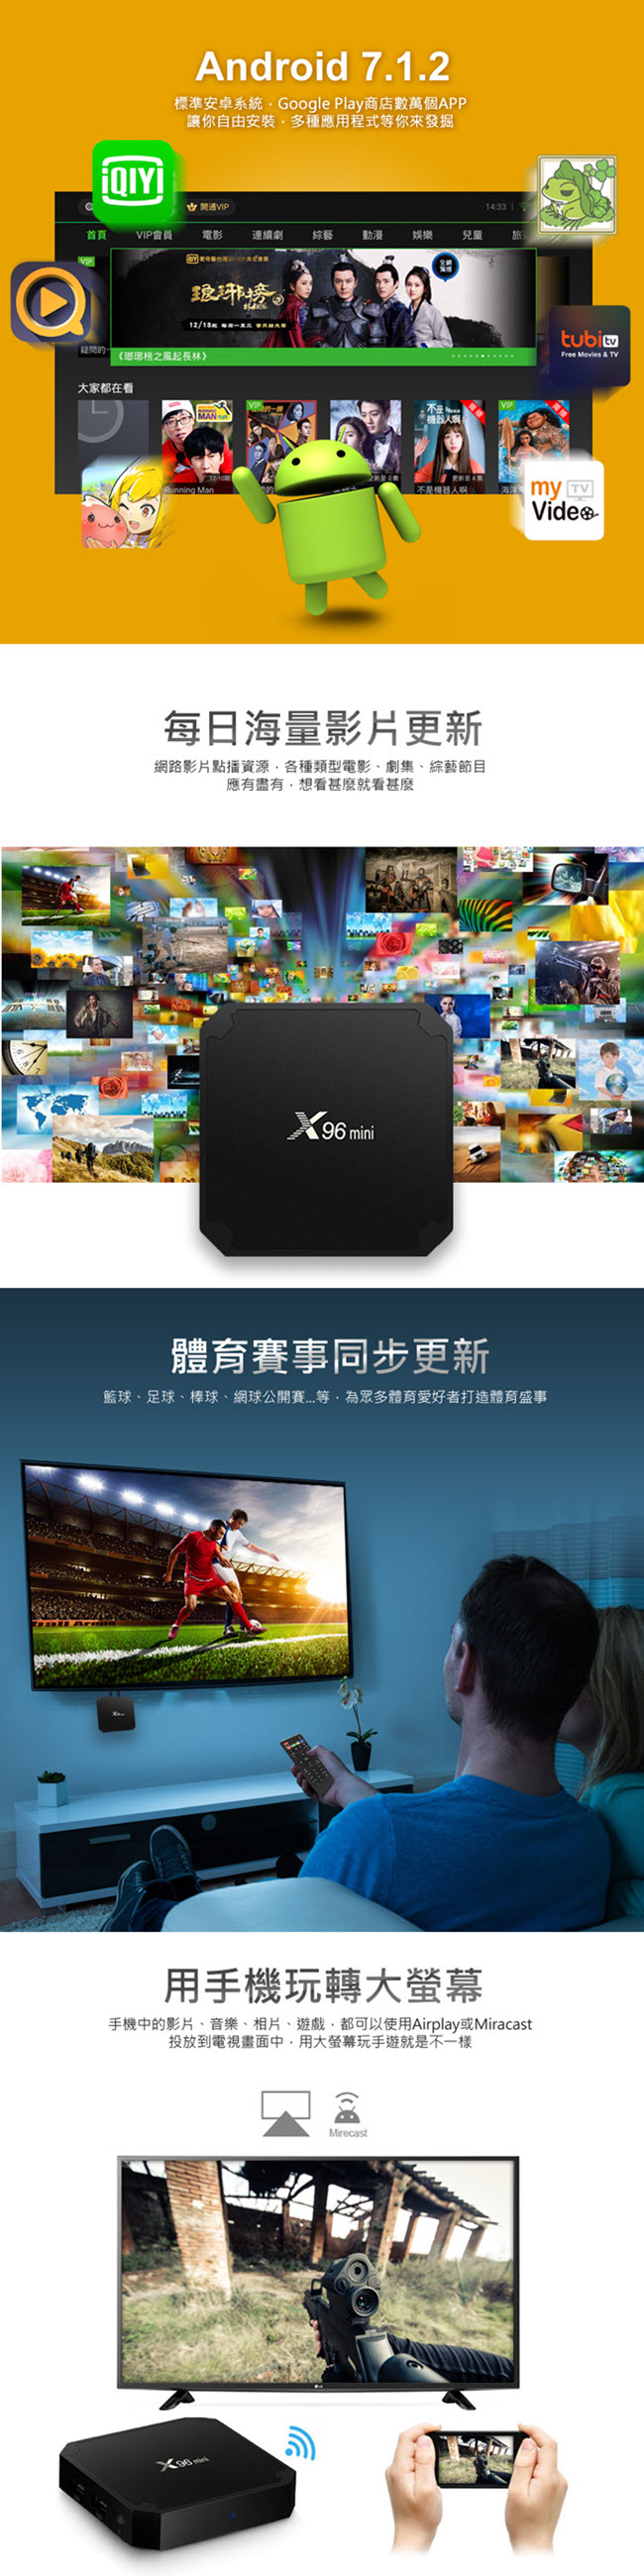 (福利品) IS-TV96 4K UHD高畫質Android智慧電視盒